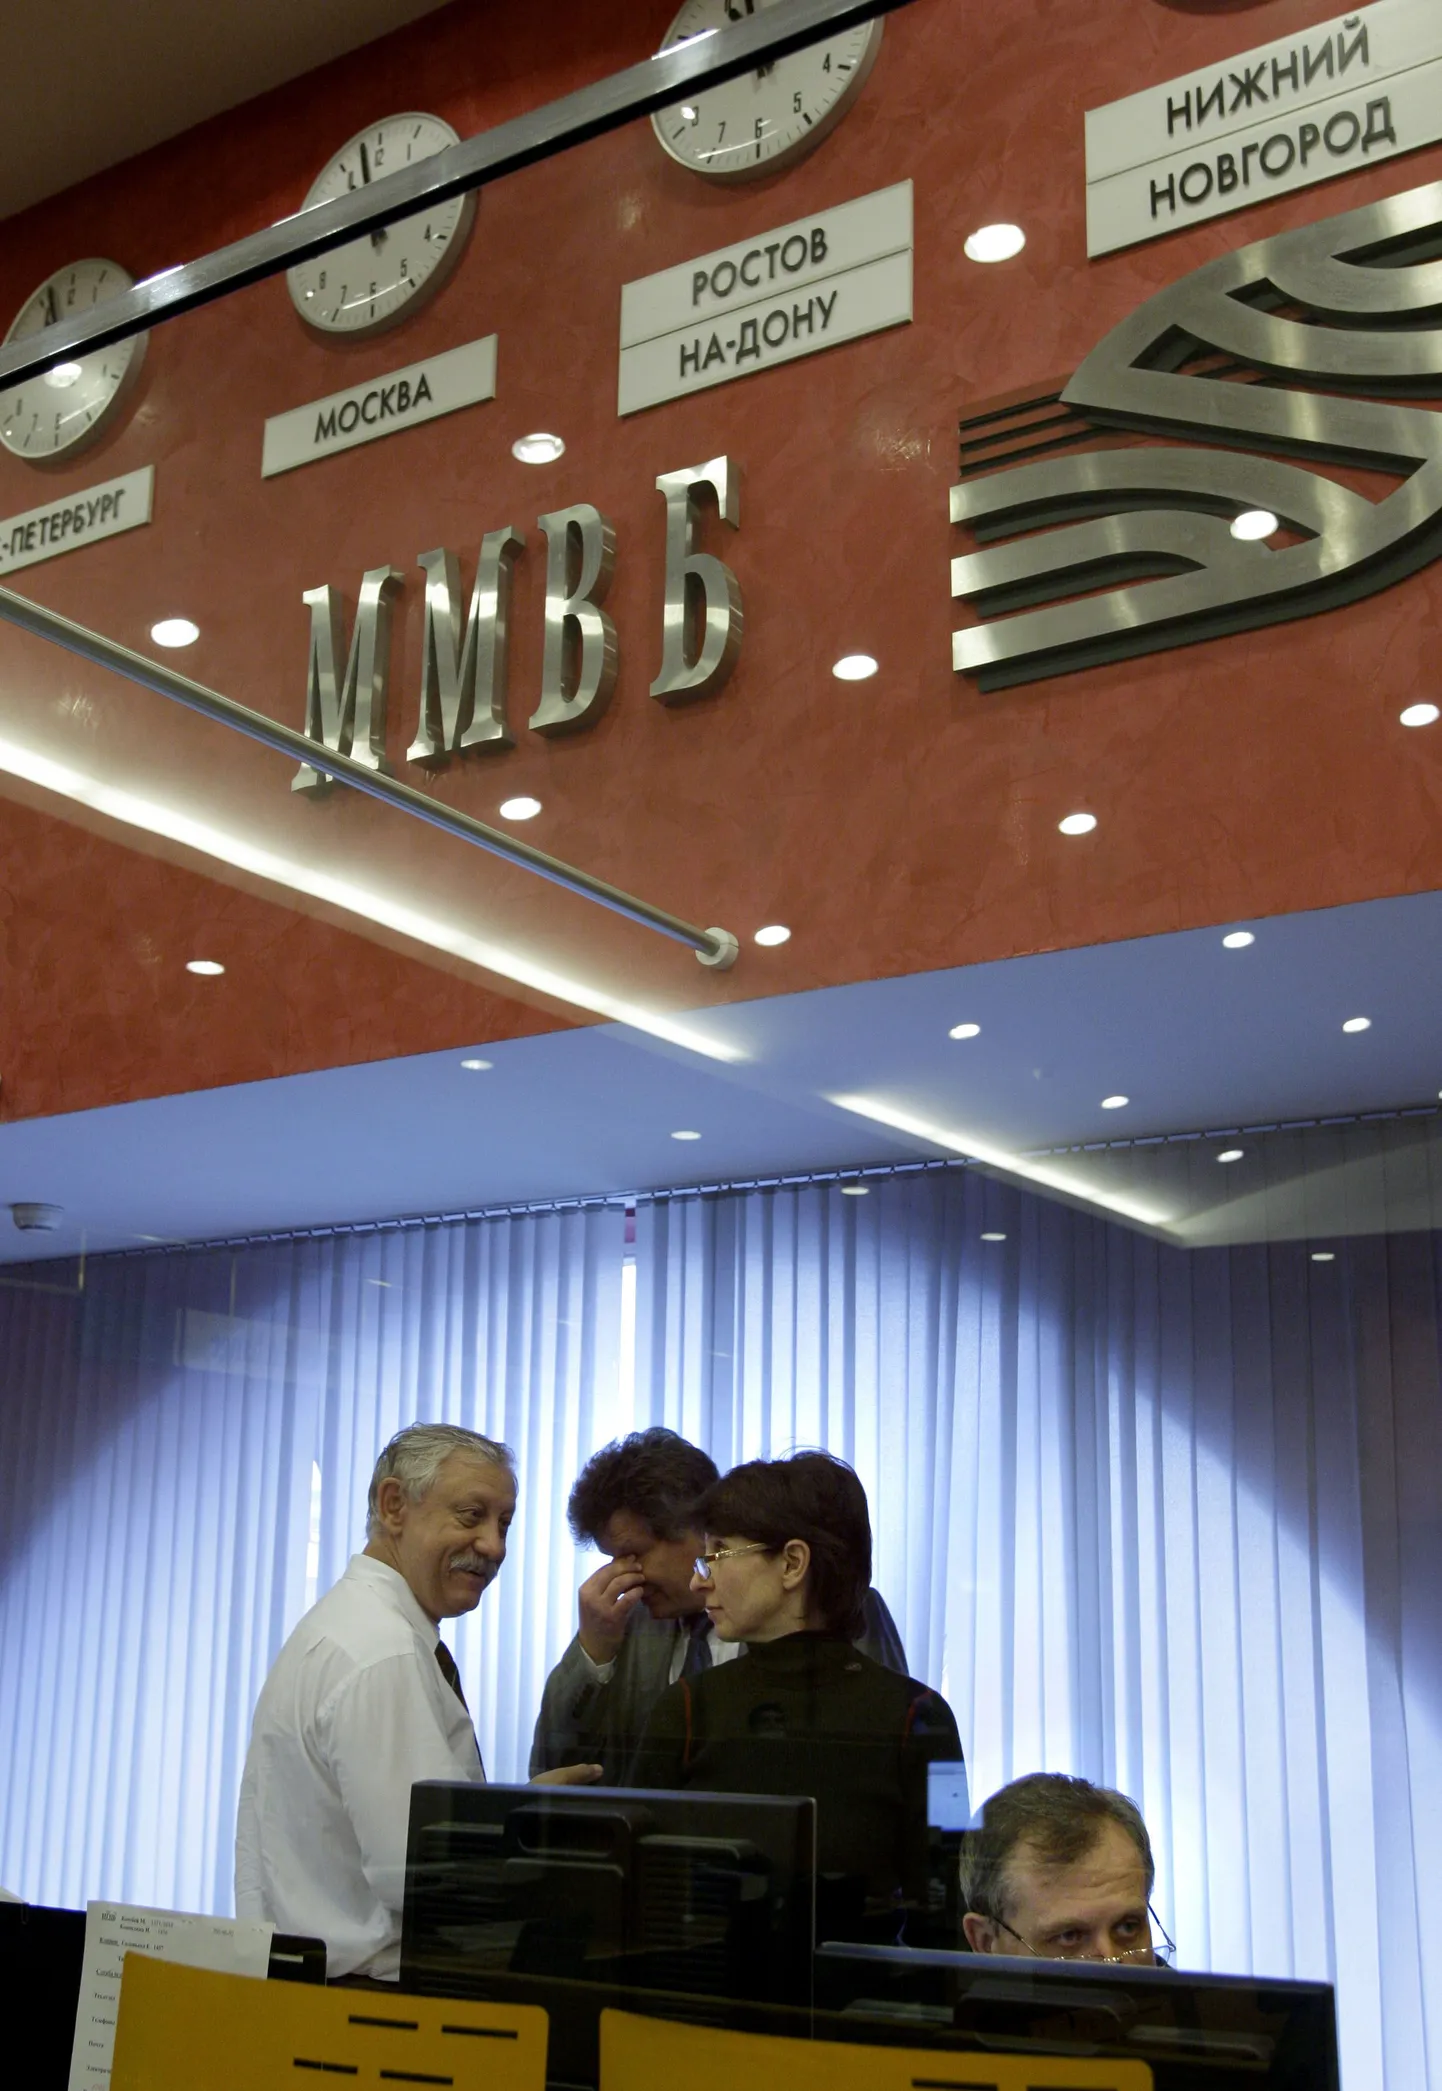 Moskva Pankadevahelisel Valuutabörsil (MICEX) peatati täna üheks tunniks järsu tõusu tõttu kauplemine.